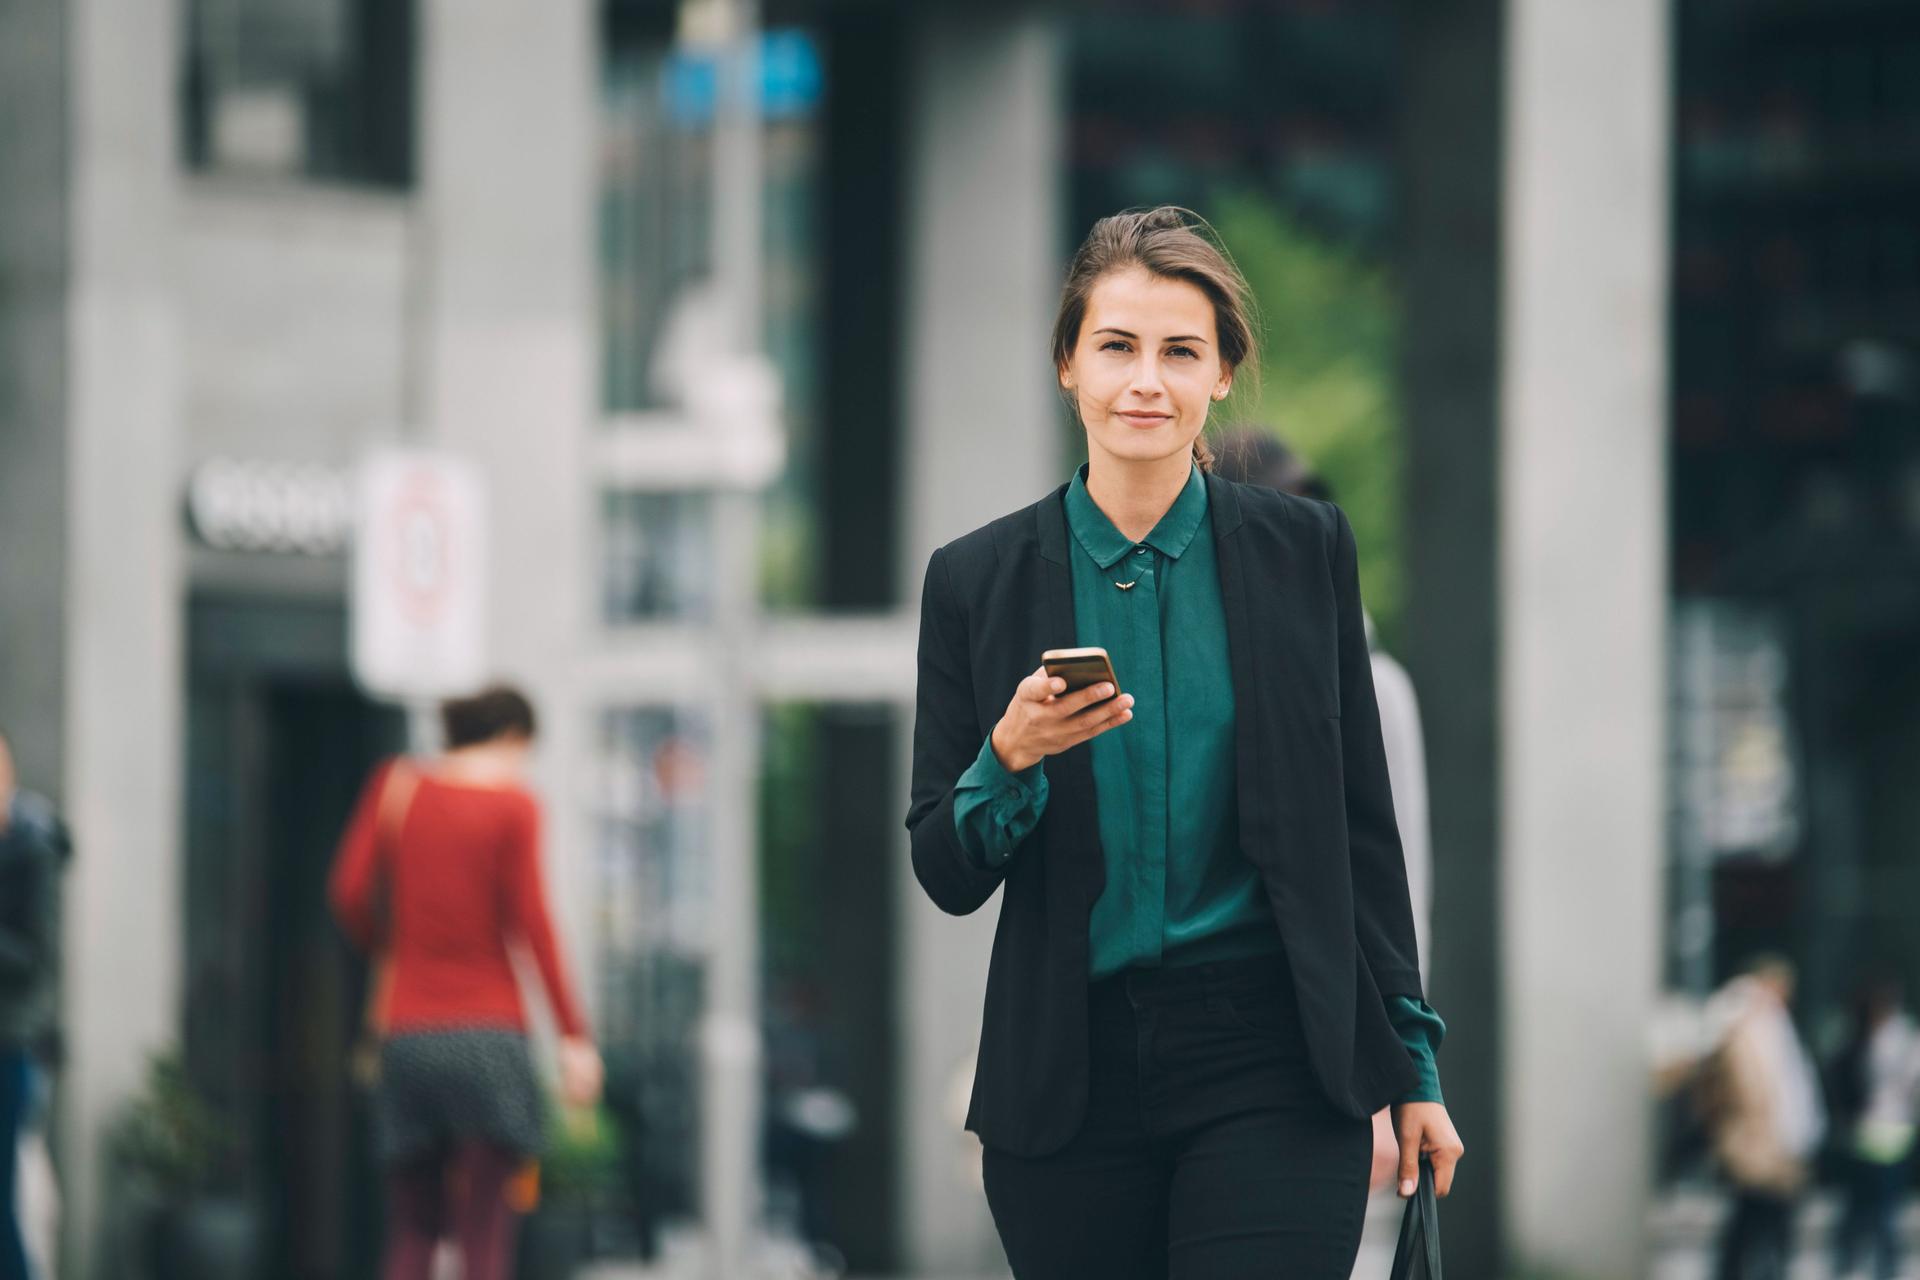 Junge Frau in Business-Kleidung mit Mobiltelefon in einer Hand und einer Tasche in der anderen, läuft auf einer Straße und blickt in die Kamera.